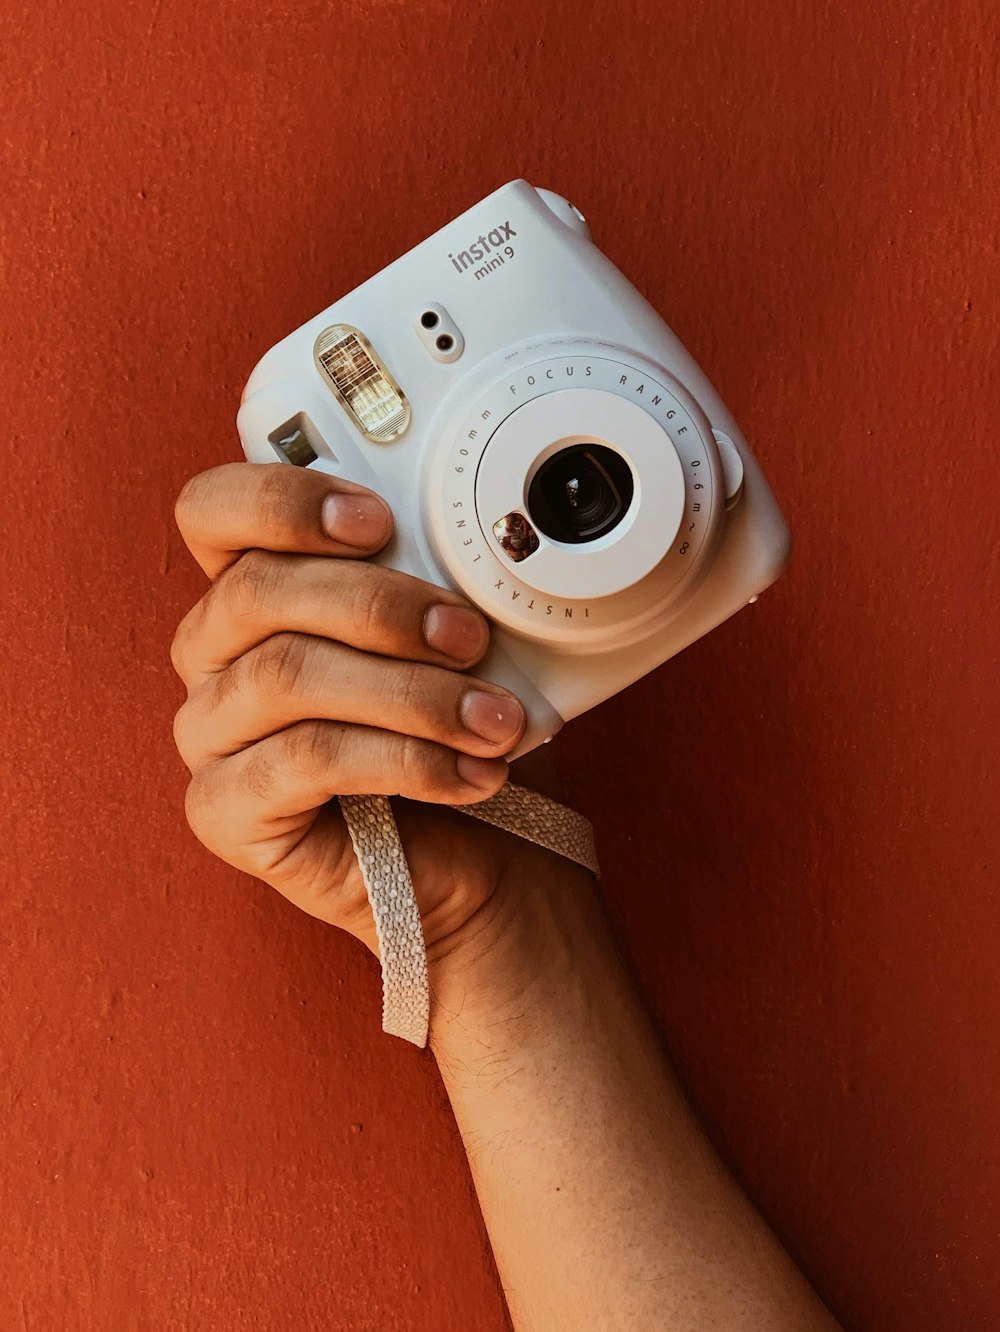 Persona che tiene in mano una fotocamera reflex digitale Canon bianca